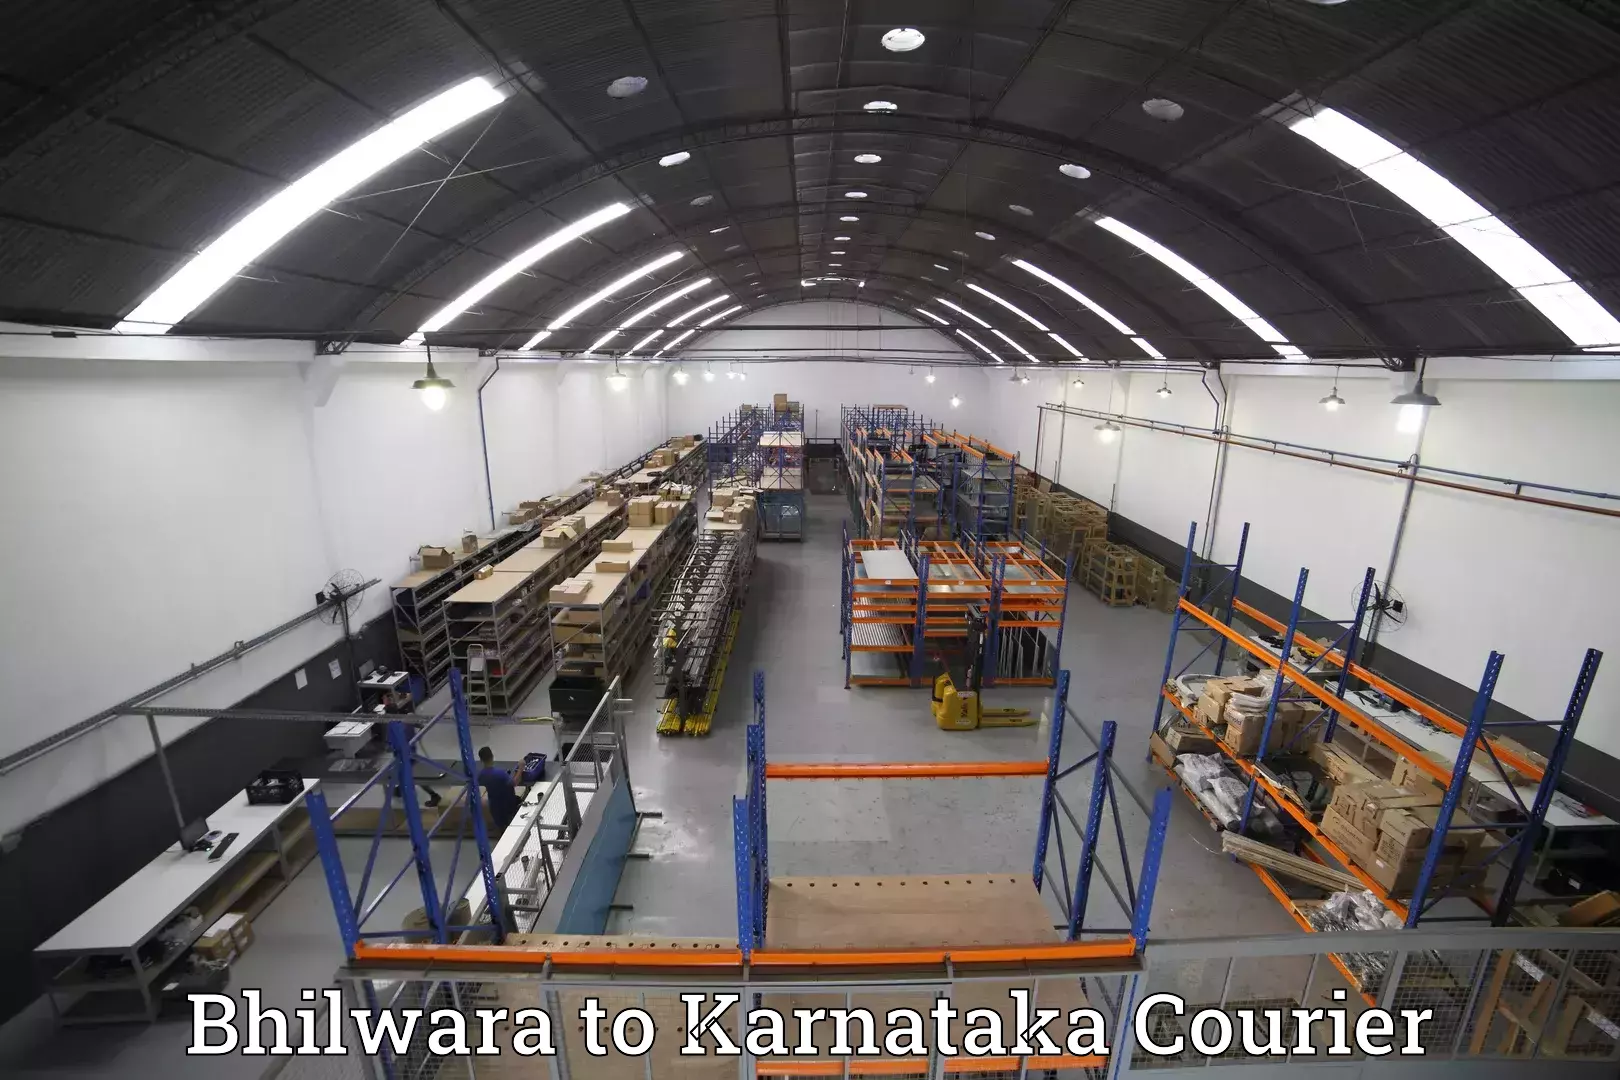 Baggage shipping experts Bhilwara to Karnataka